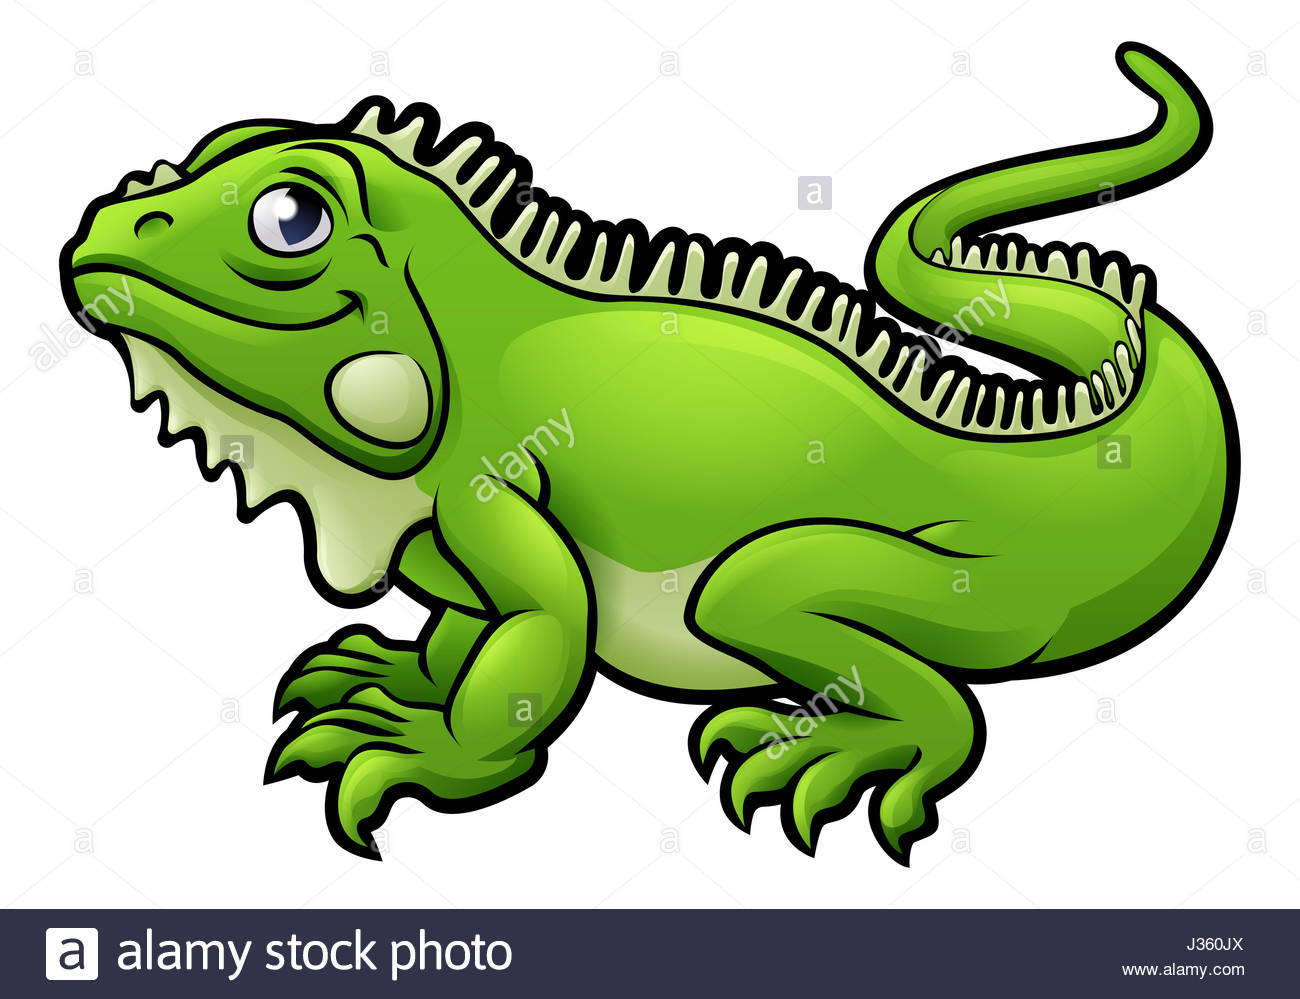 An illustration of an iguana lizard cartoon character